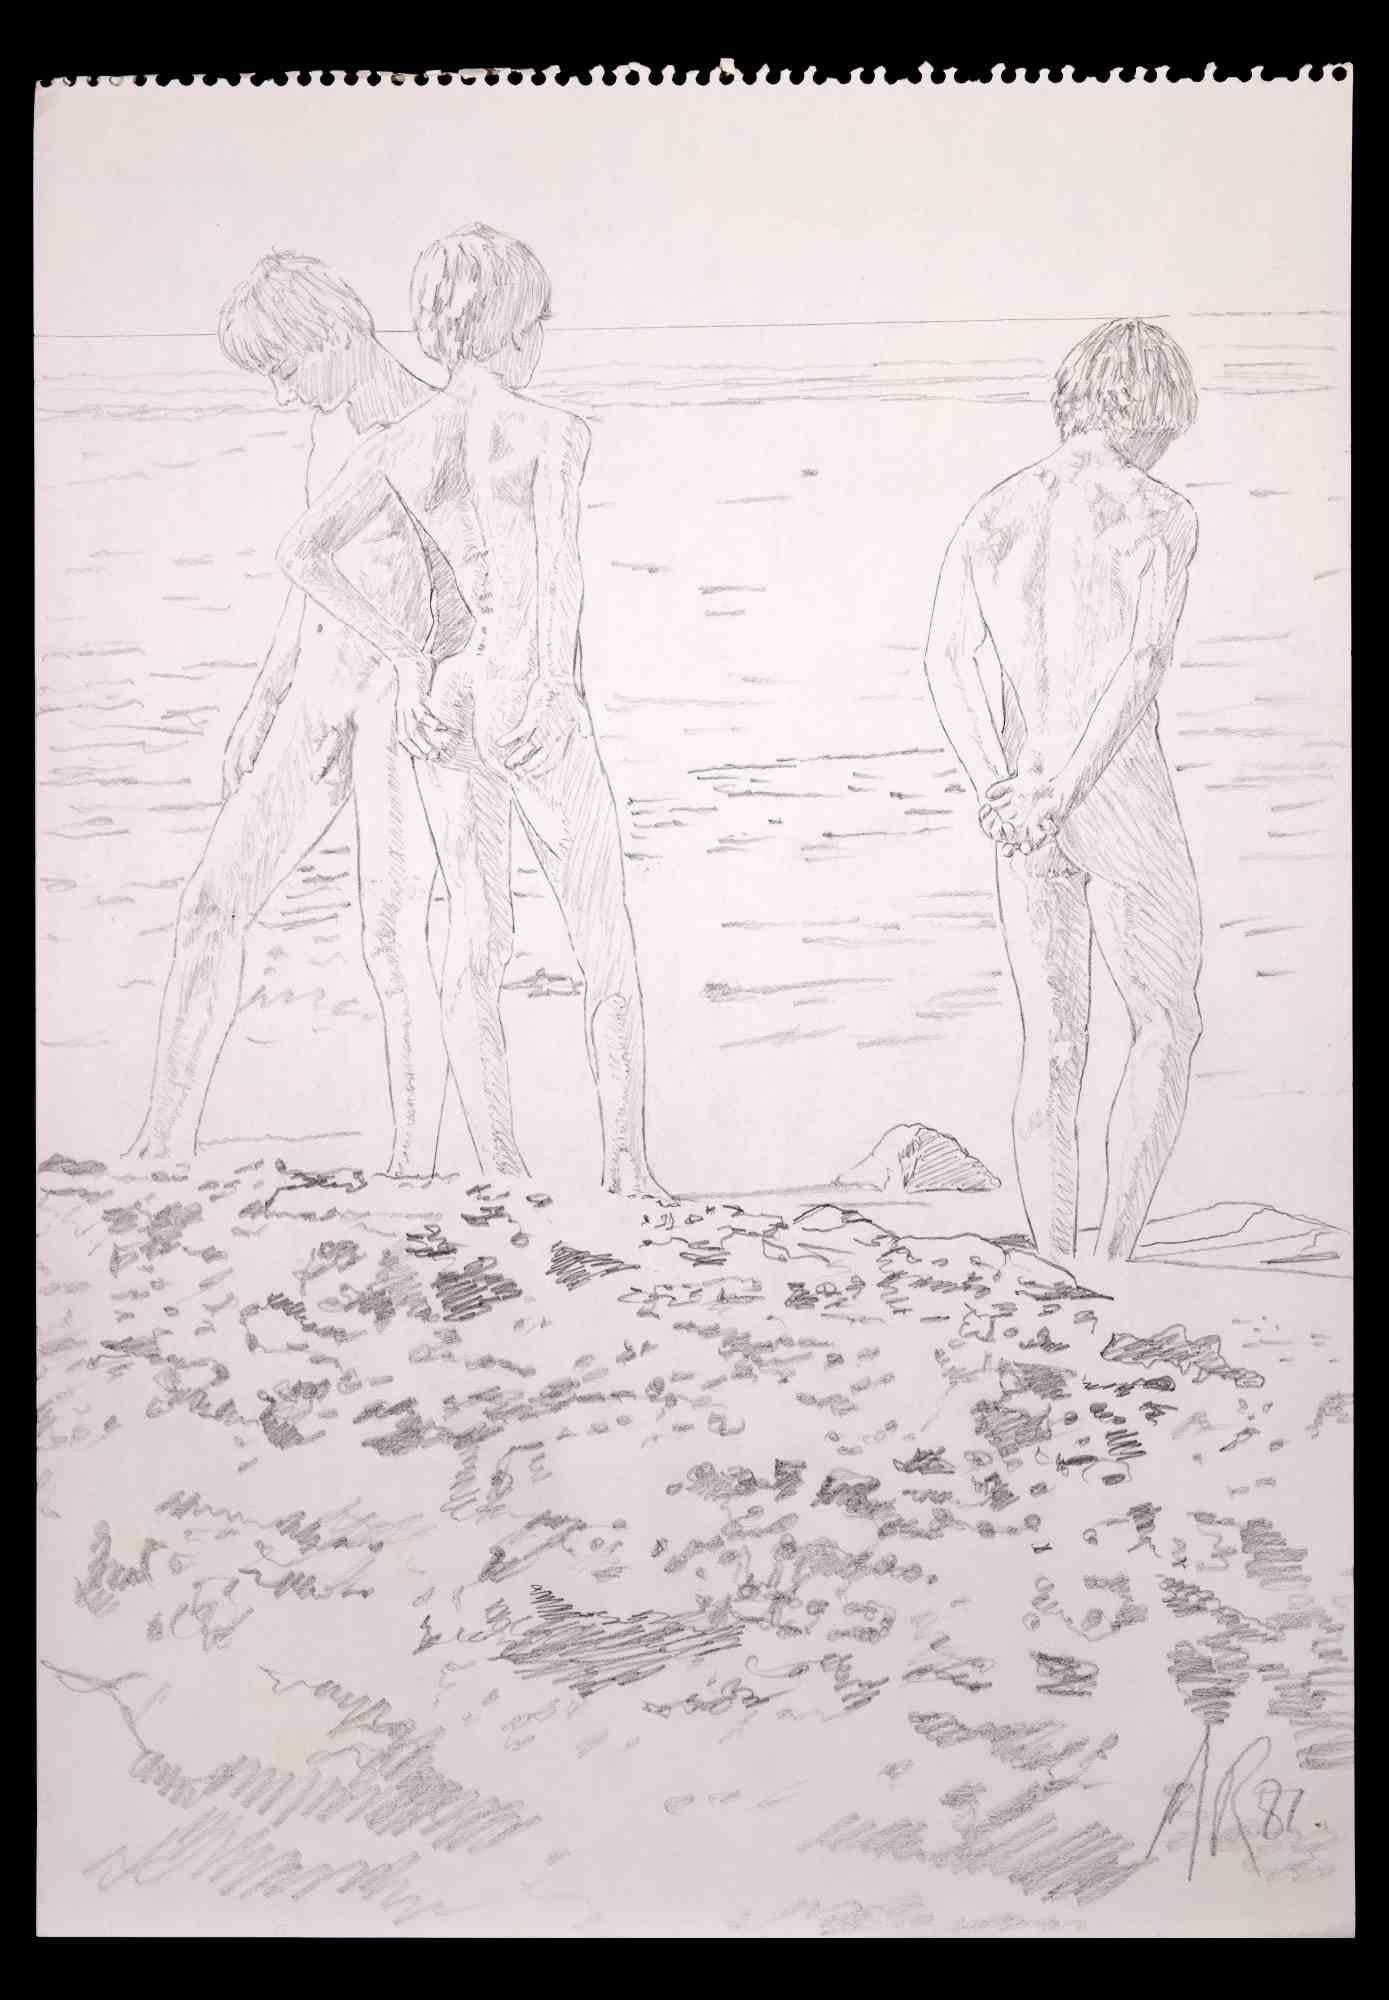 Les jeunes garçons à la plage - dessin original d'Anthony Roaland - 1982